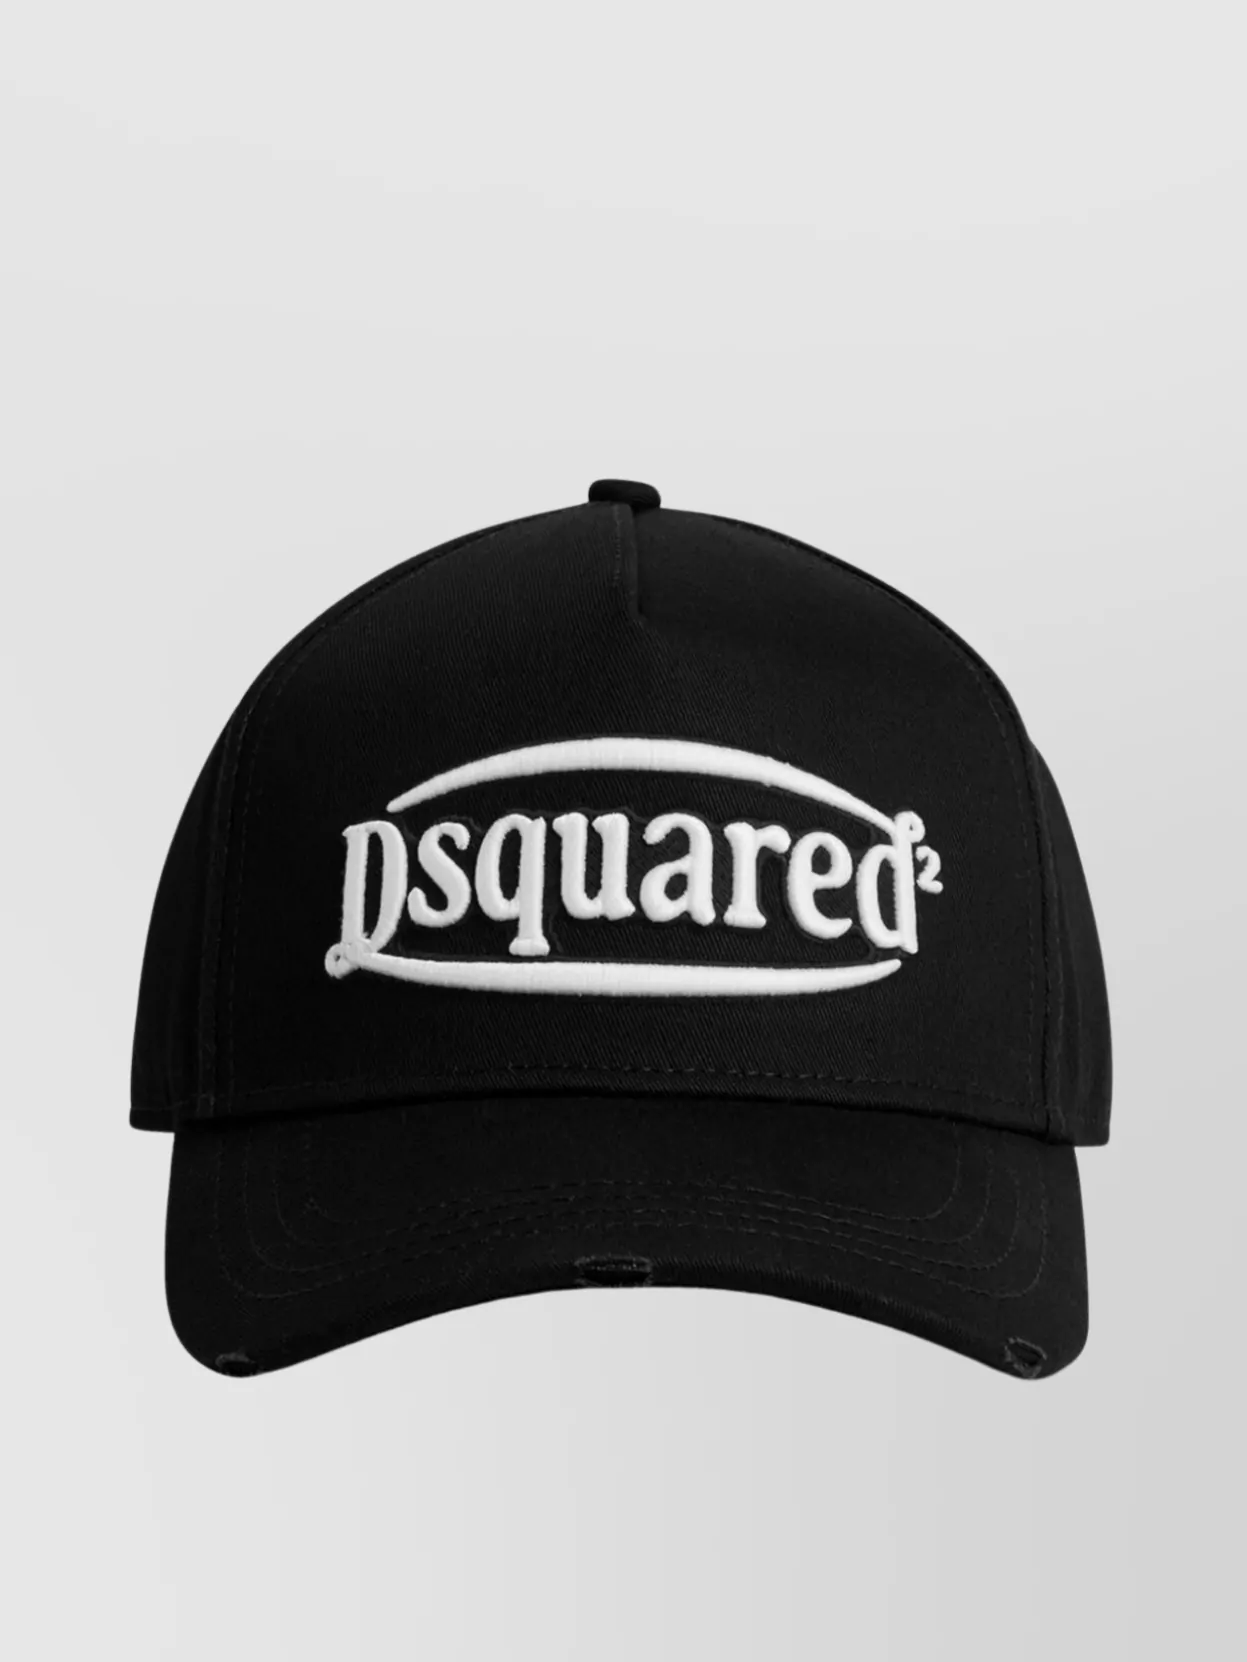 Shop Dsquared2 Adjustable Baseball Hat Curved Peak